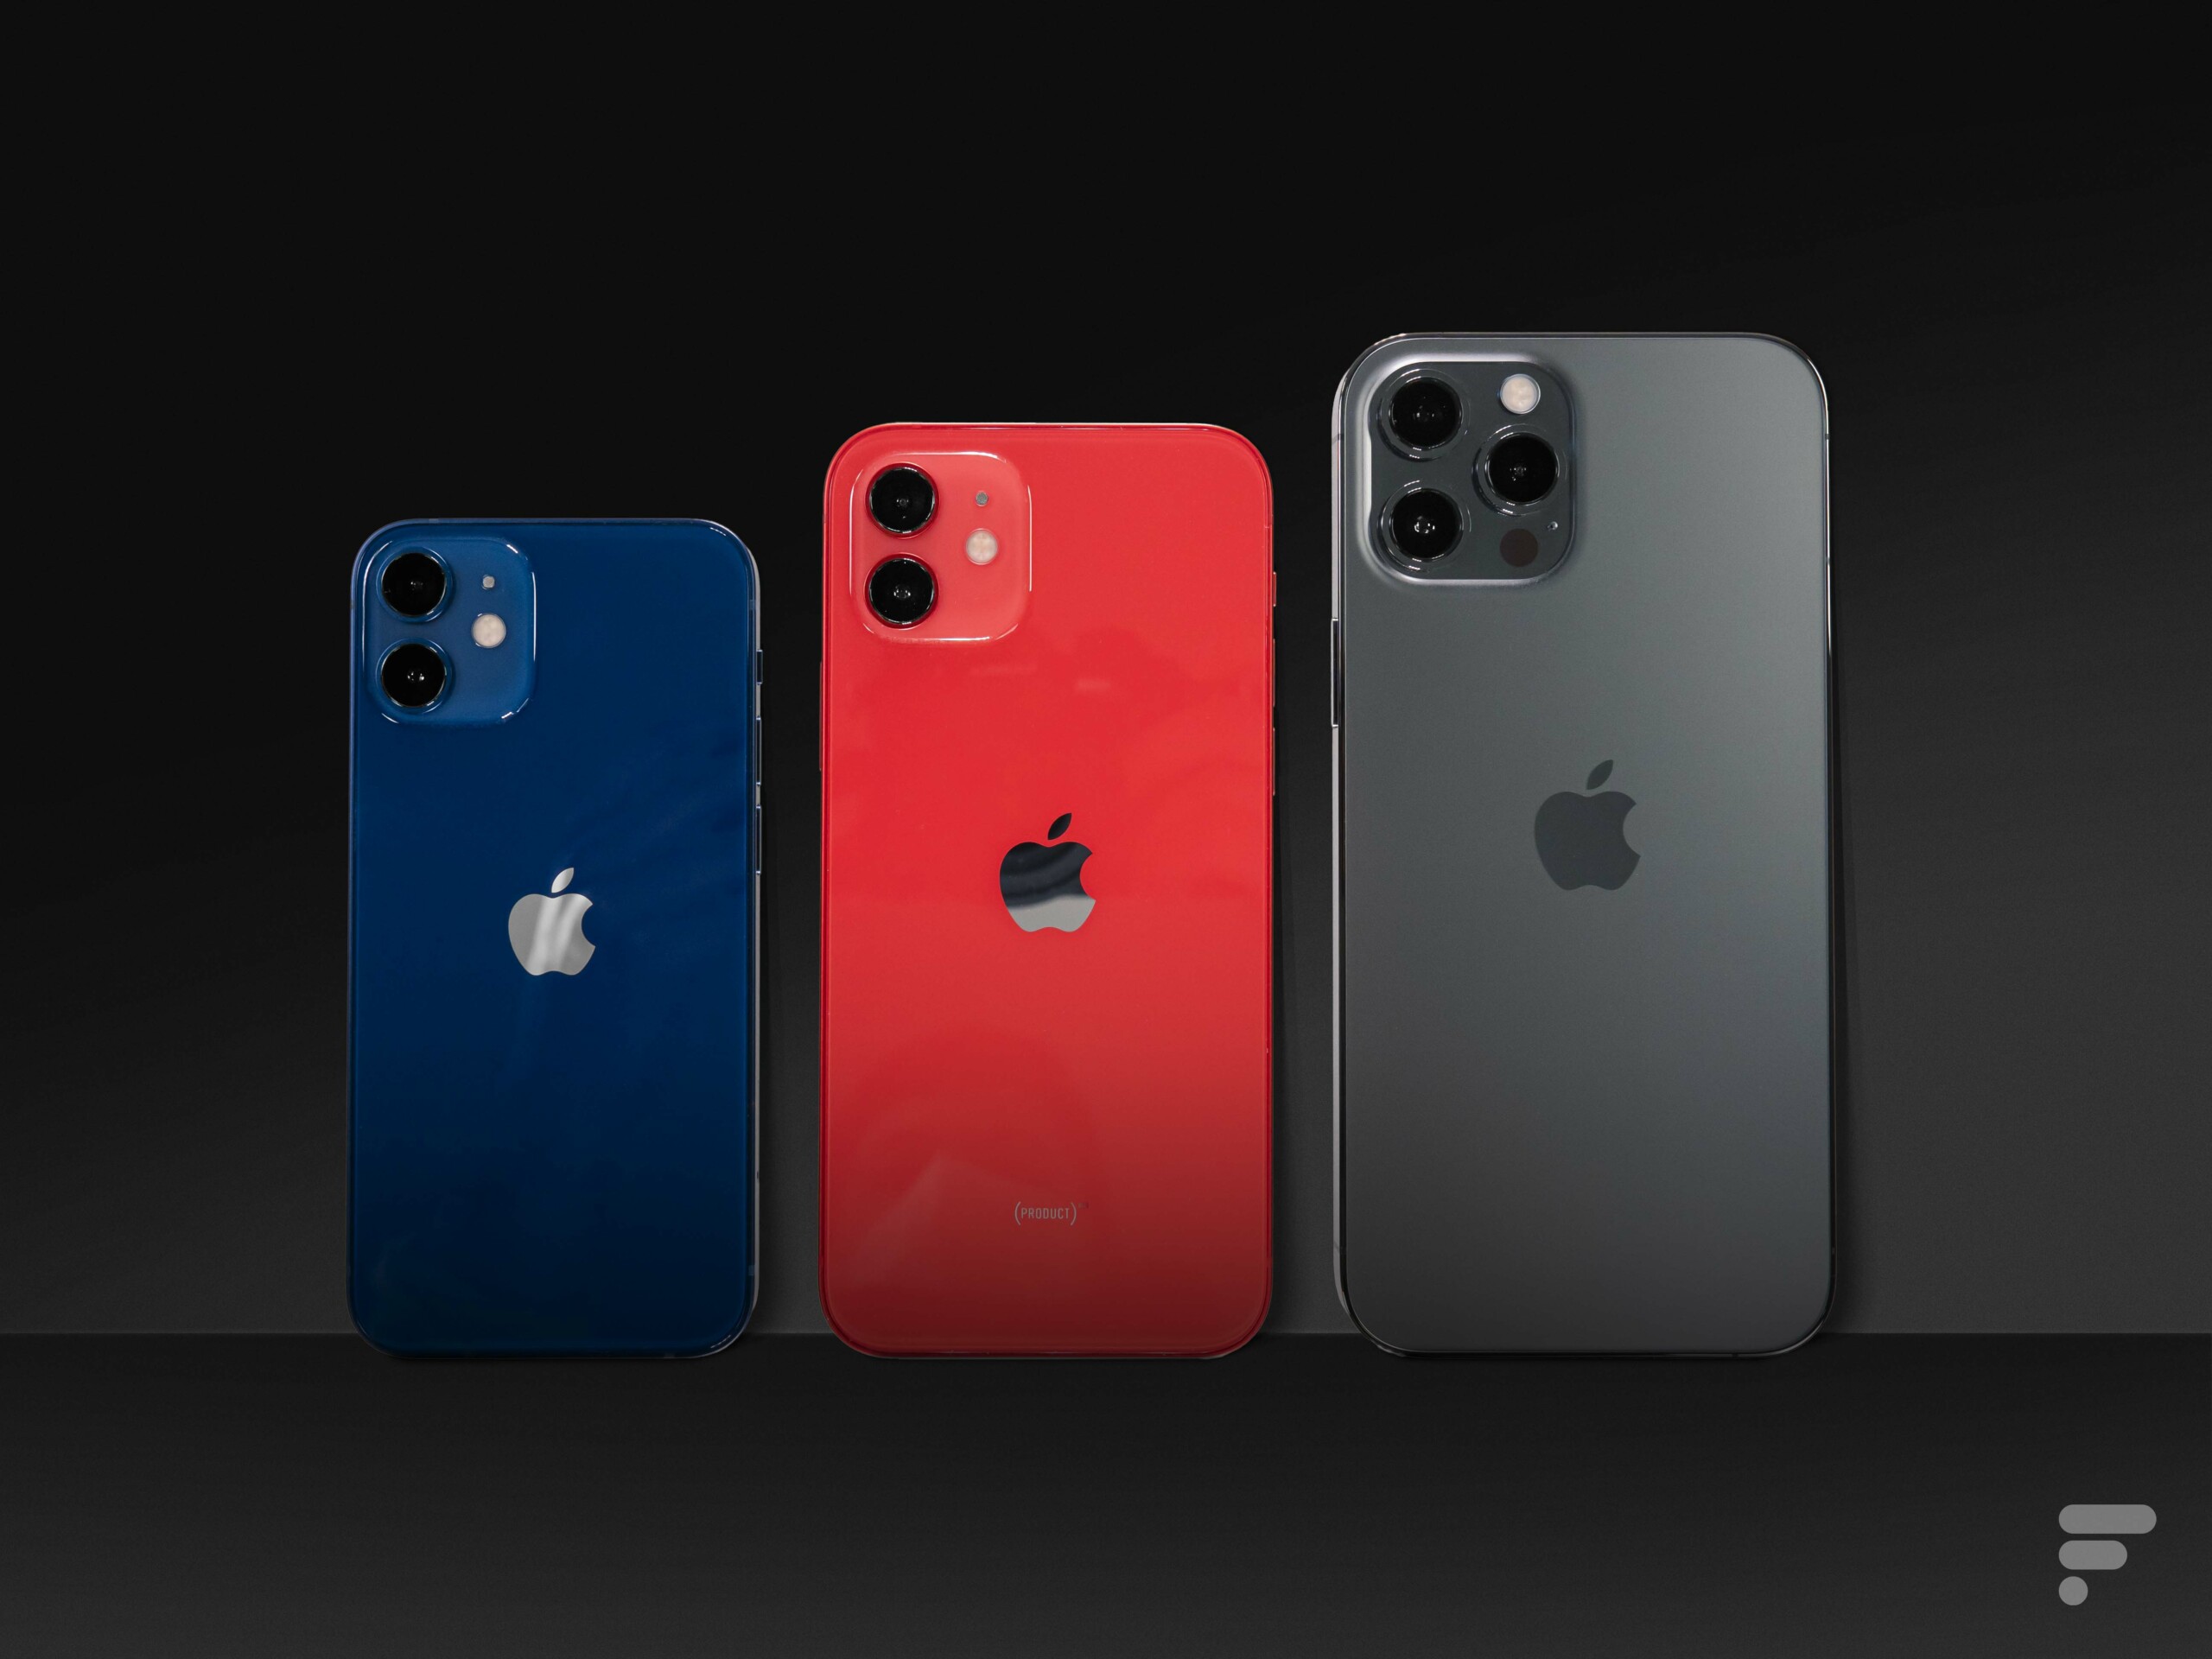 De gauche à droite : les iPhone 12 mini, iPhone 12 et iPhone 12 Pro Max